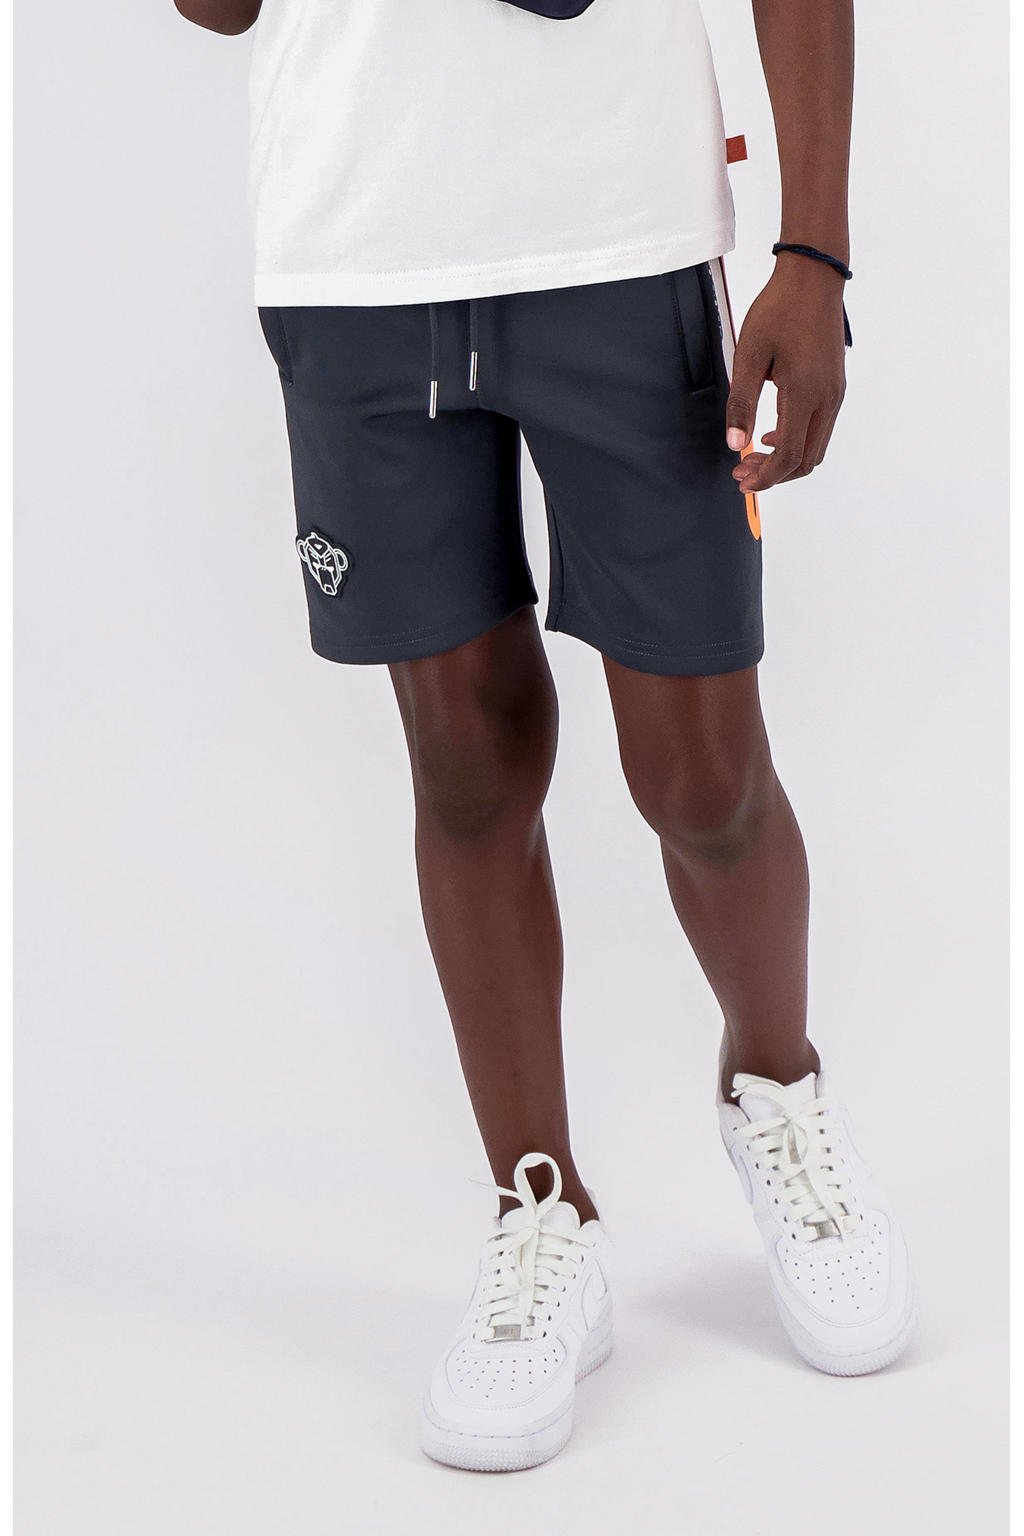 Blauwe jongens BLACK BANANAS slim fit short van polyester met regular waist en elastische tailleband met koord